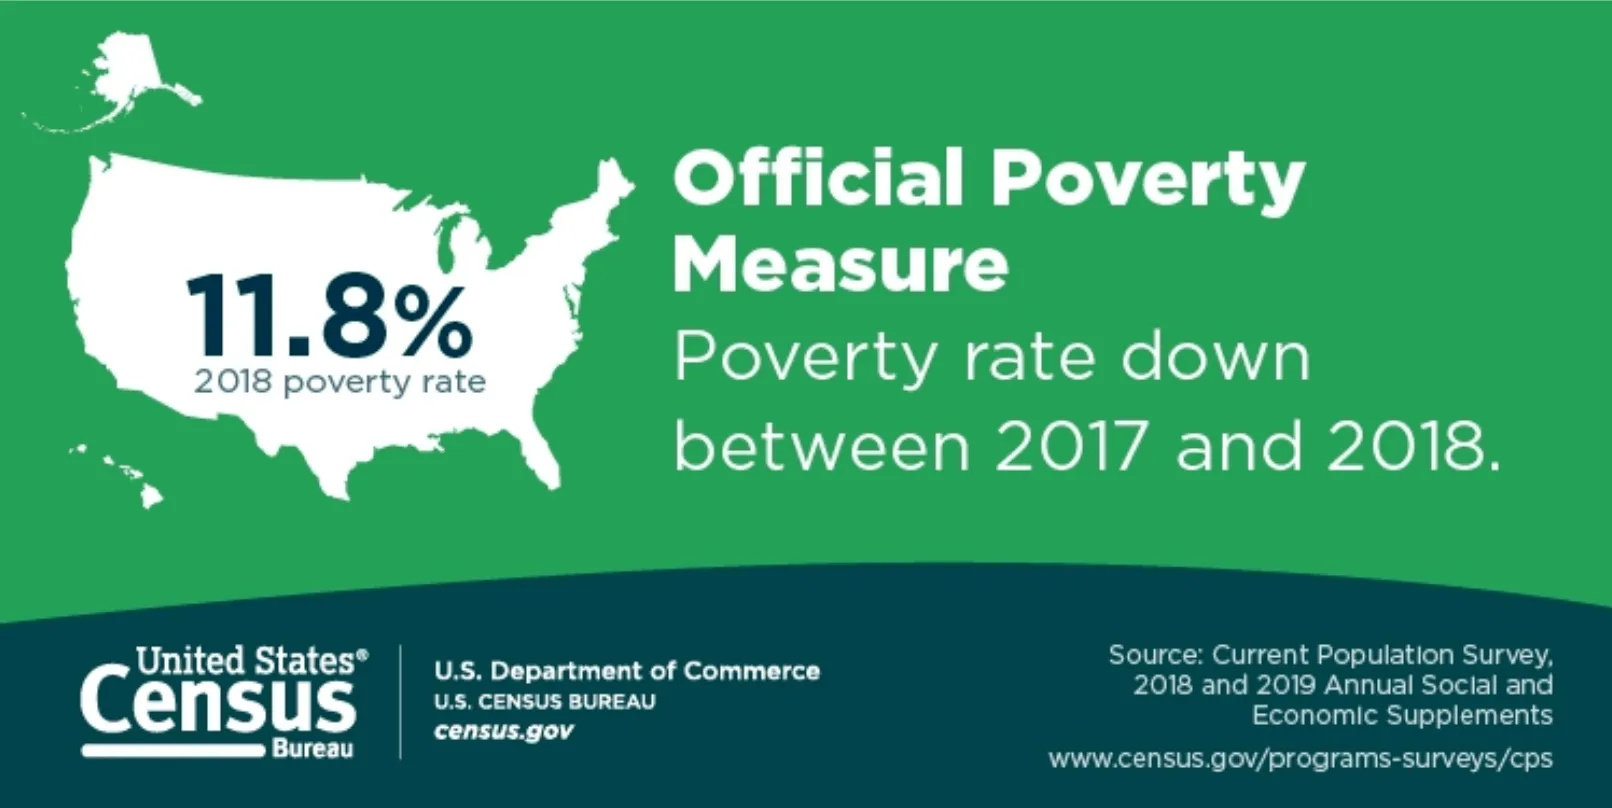 Selon les chiffres gouvernementaux américains, le taux de pauvreté officiel a baissé de 0,5 point entre 2017 et 2018. Depuis l'année 2014, on peut noter une baisse globale de 3 points.